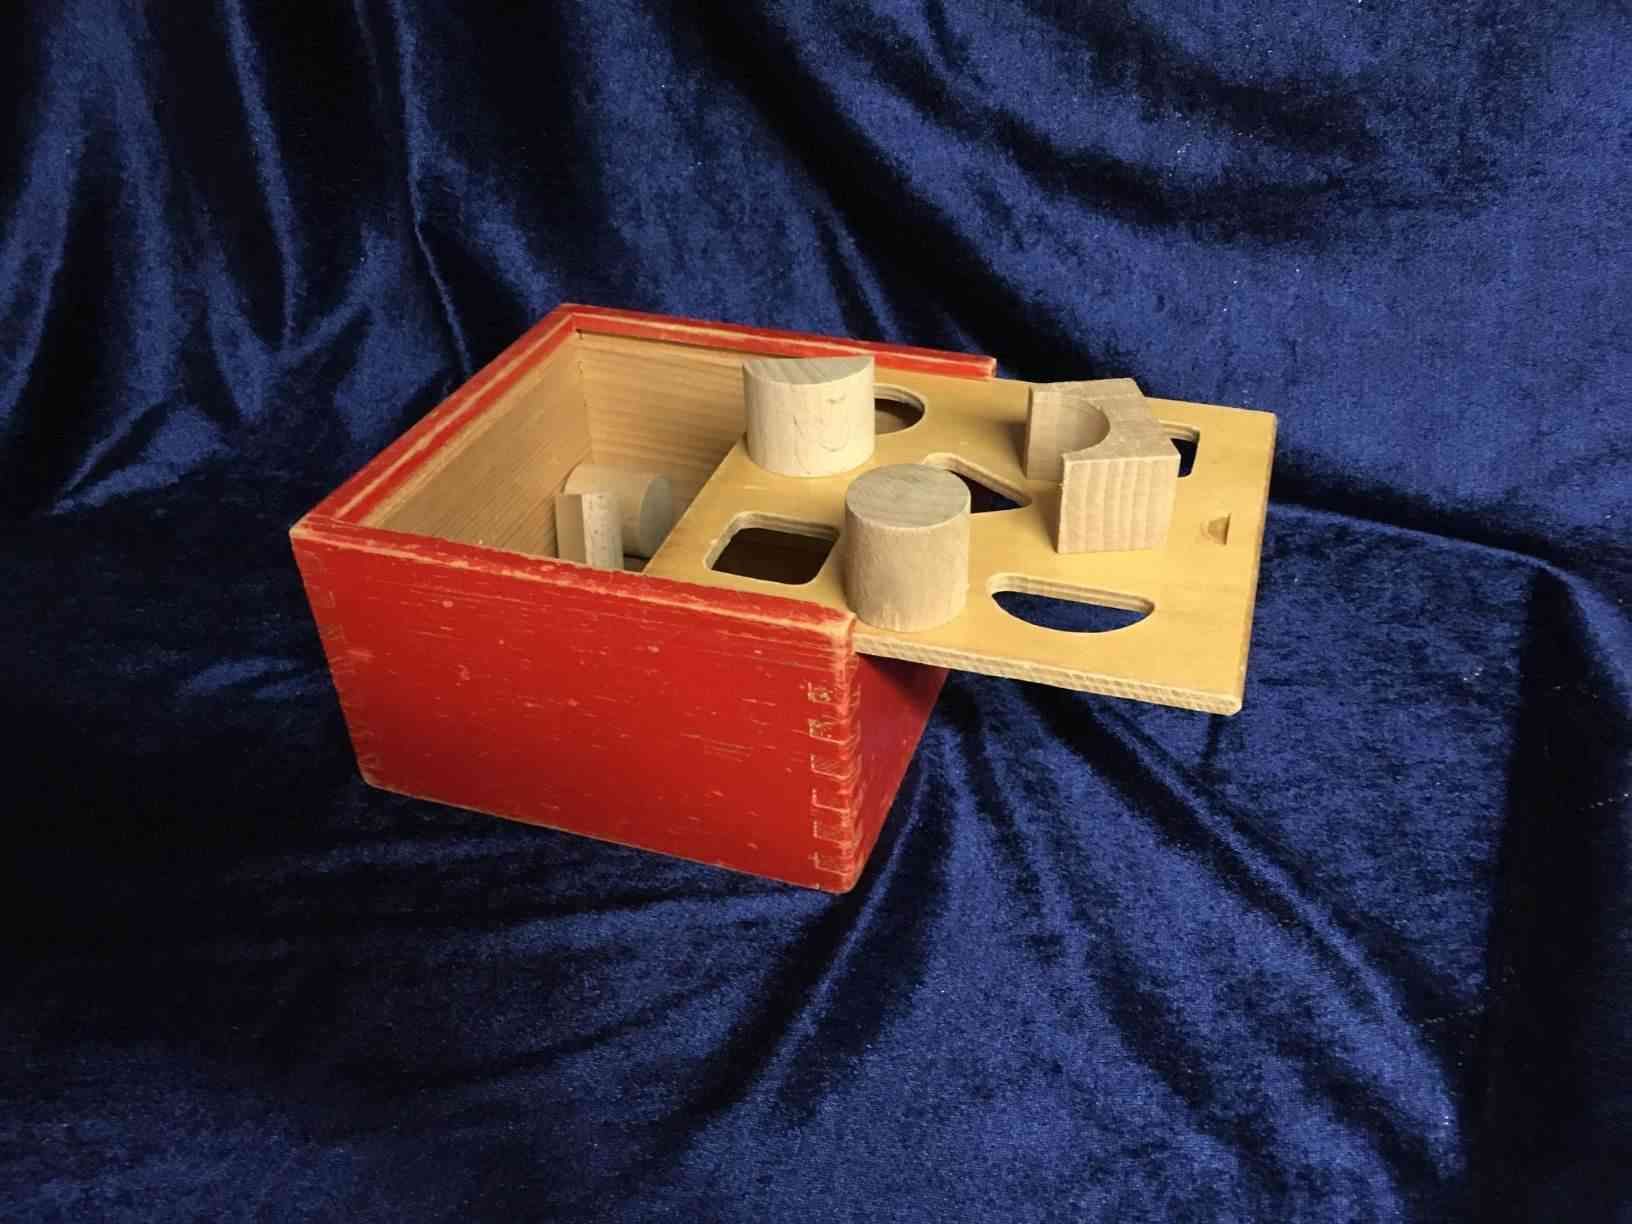 Leg - Put i boks fra 1960'erne, der mangler 2 klodser. Dette legetøj siges at stimulere koordineringsevnen og er egnet til børn på ca. 2 år. Pris: 150,- Kr.